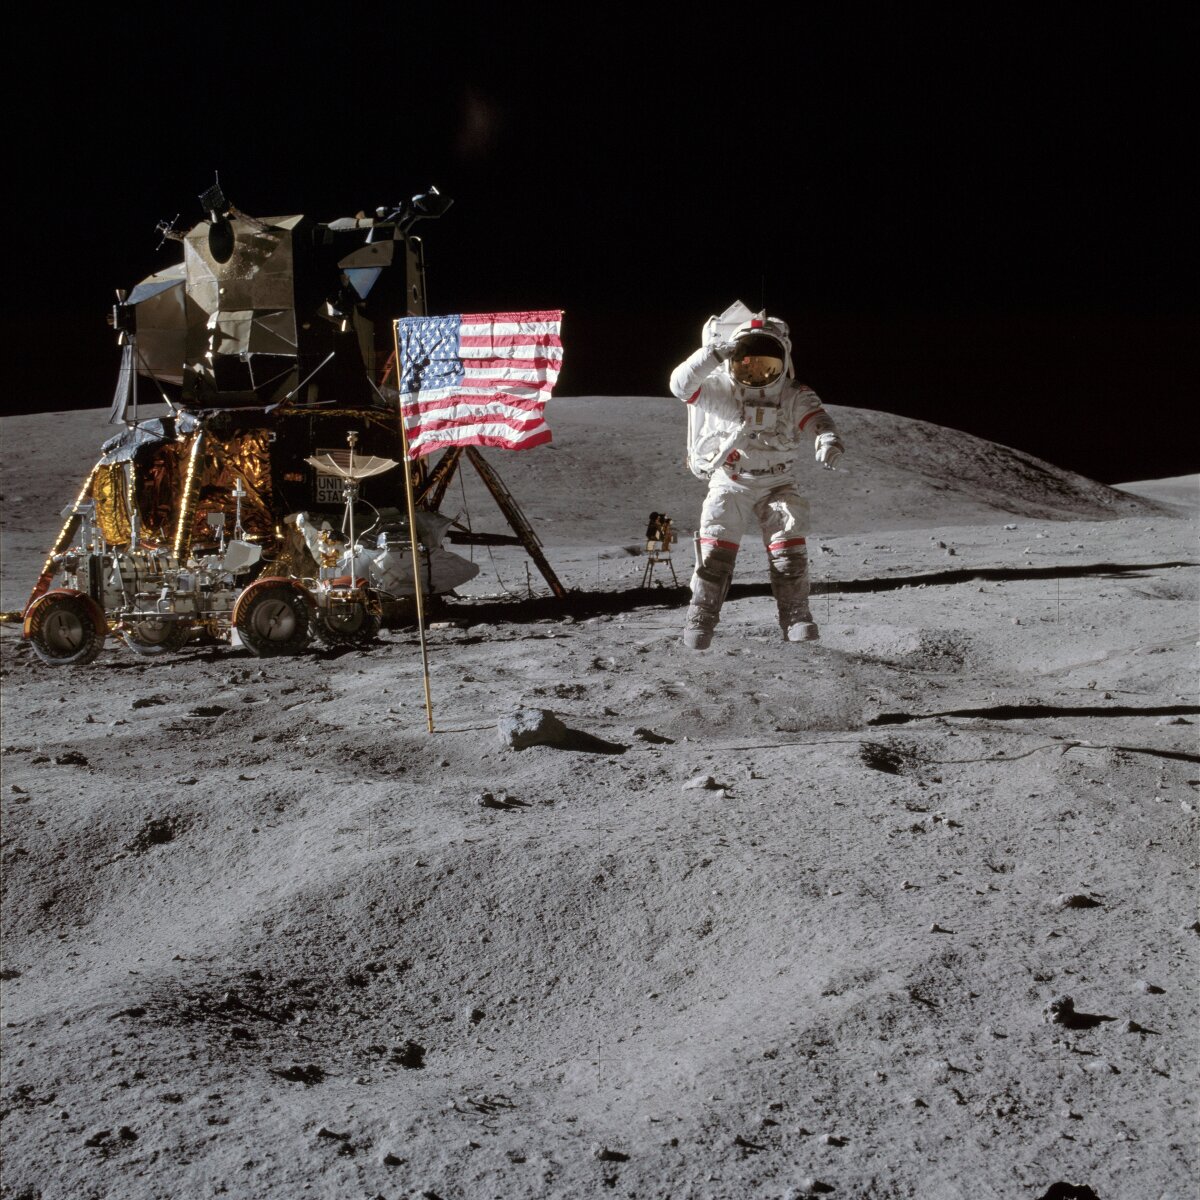 <p>Астронавт Джон Янг передвигается по лунной поверхности.</p>

<p>&nbsp;</p>